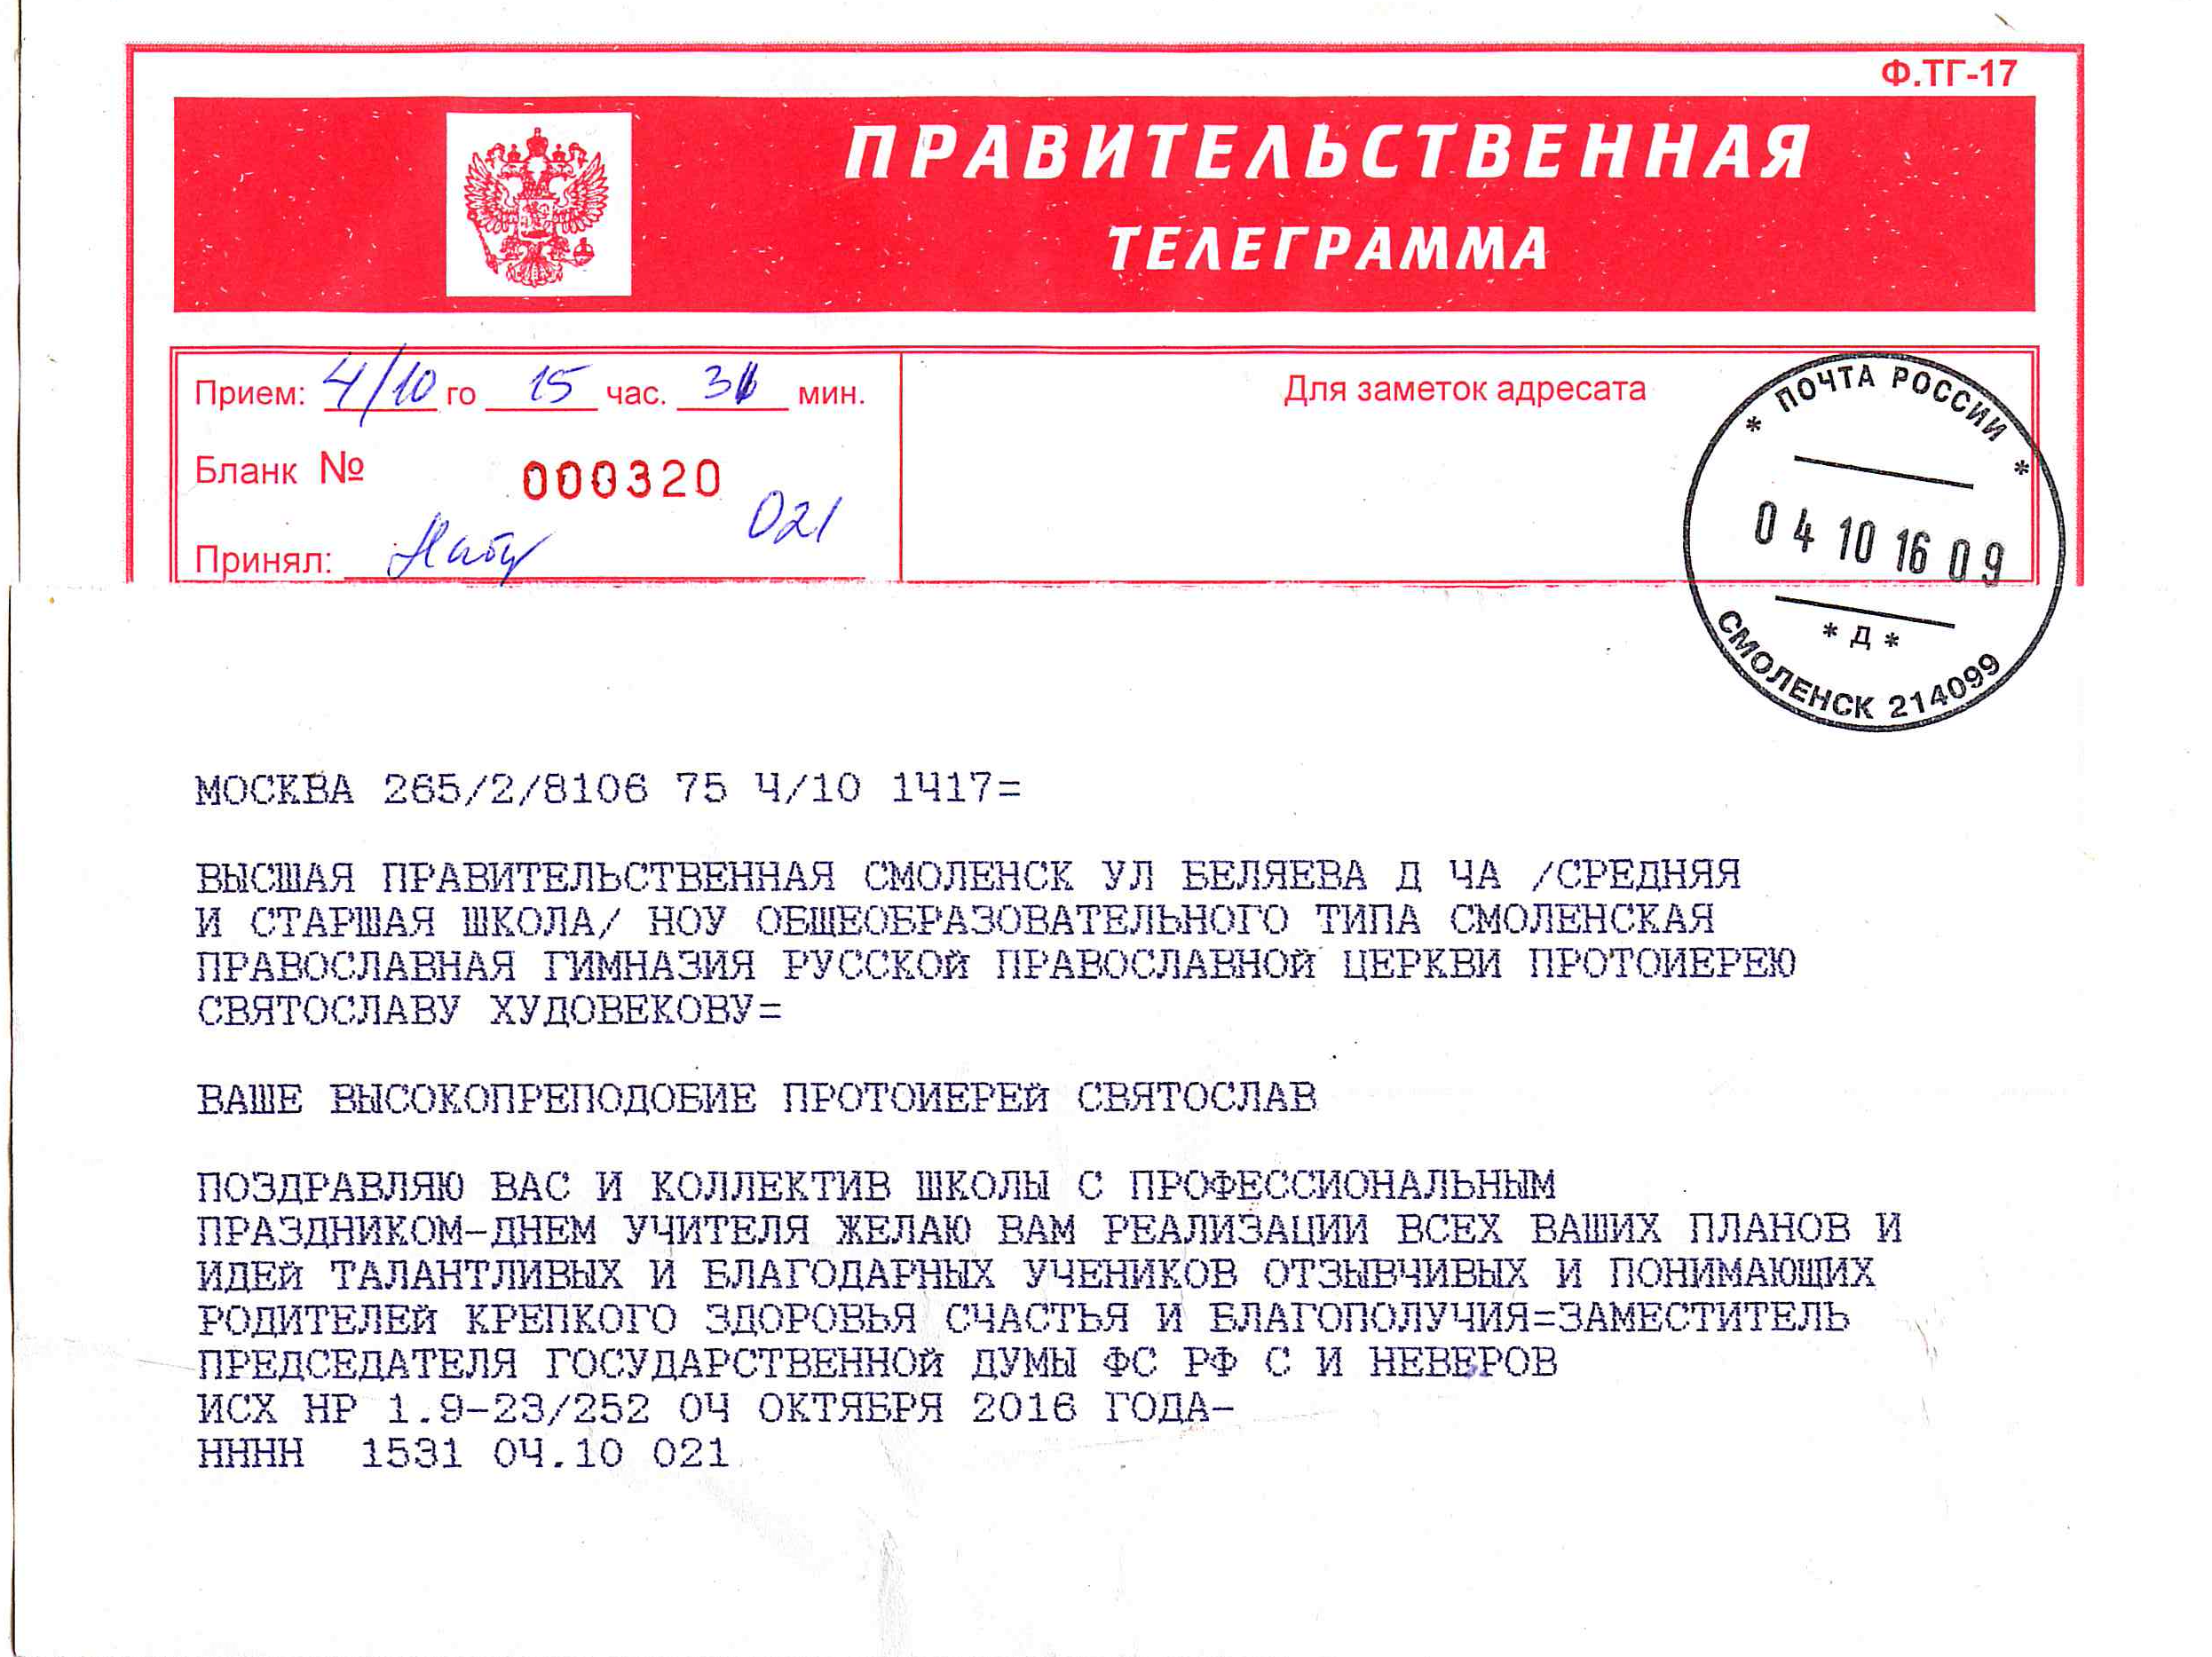 Скачать телеграмму на русском языке фото 52